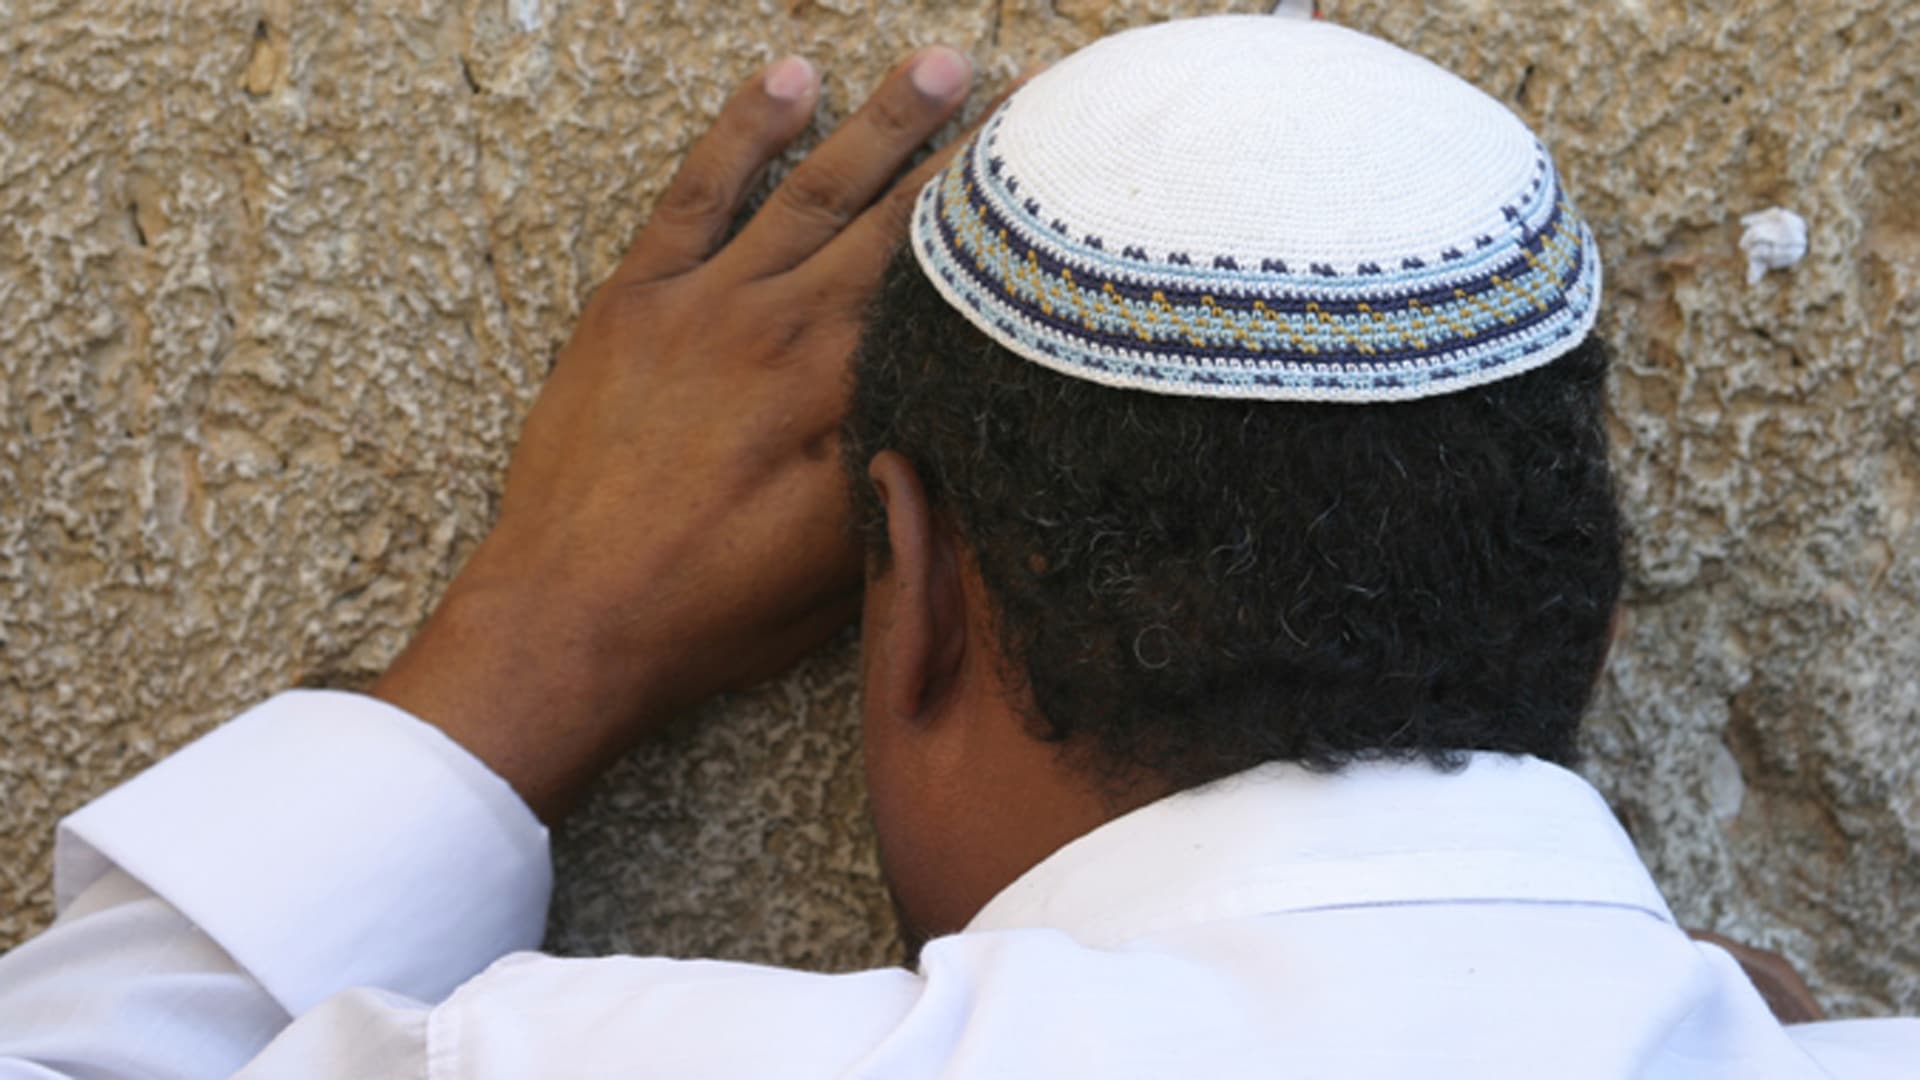 Das Gebet, wie hier an der Klagemauer in Jerusalem, ist für gläubige Juden an den hohen jüdischen Feiertagen besonders wichtig